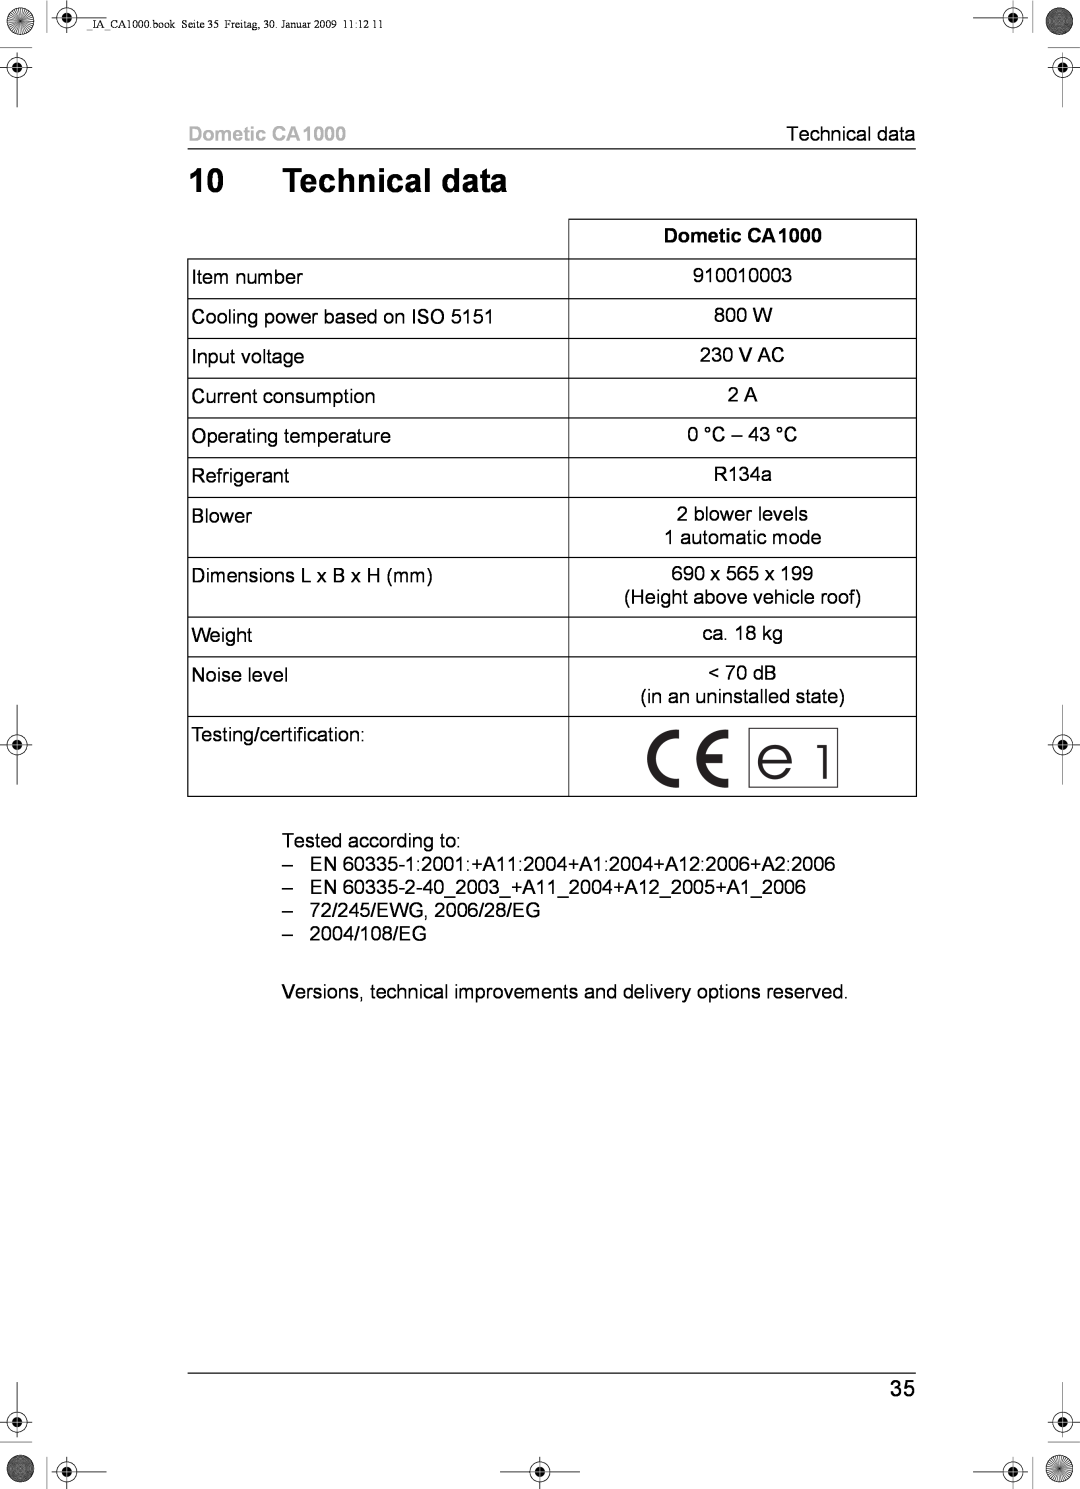 Dometic installation manual Technical data, Dometic CA1000 